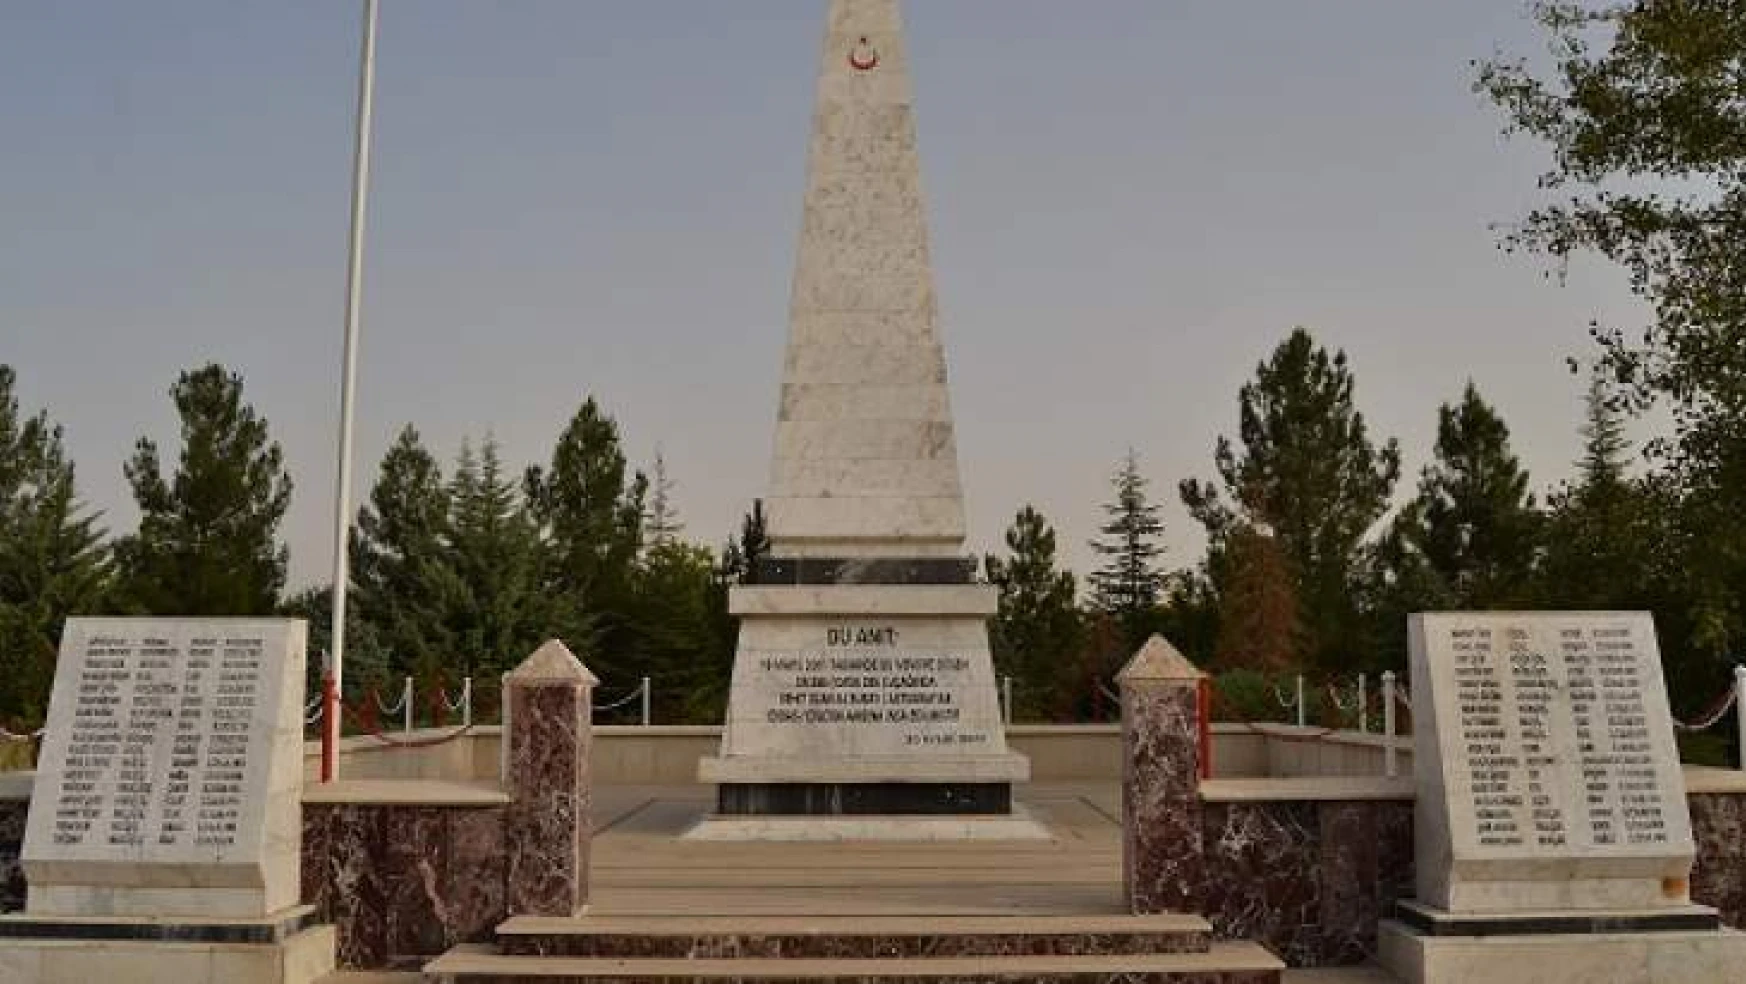 Malatya Halkı CASA Şehitler Anıtı'ndan Habersiz.